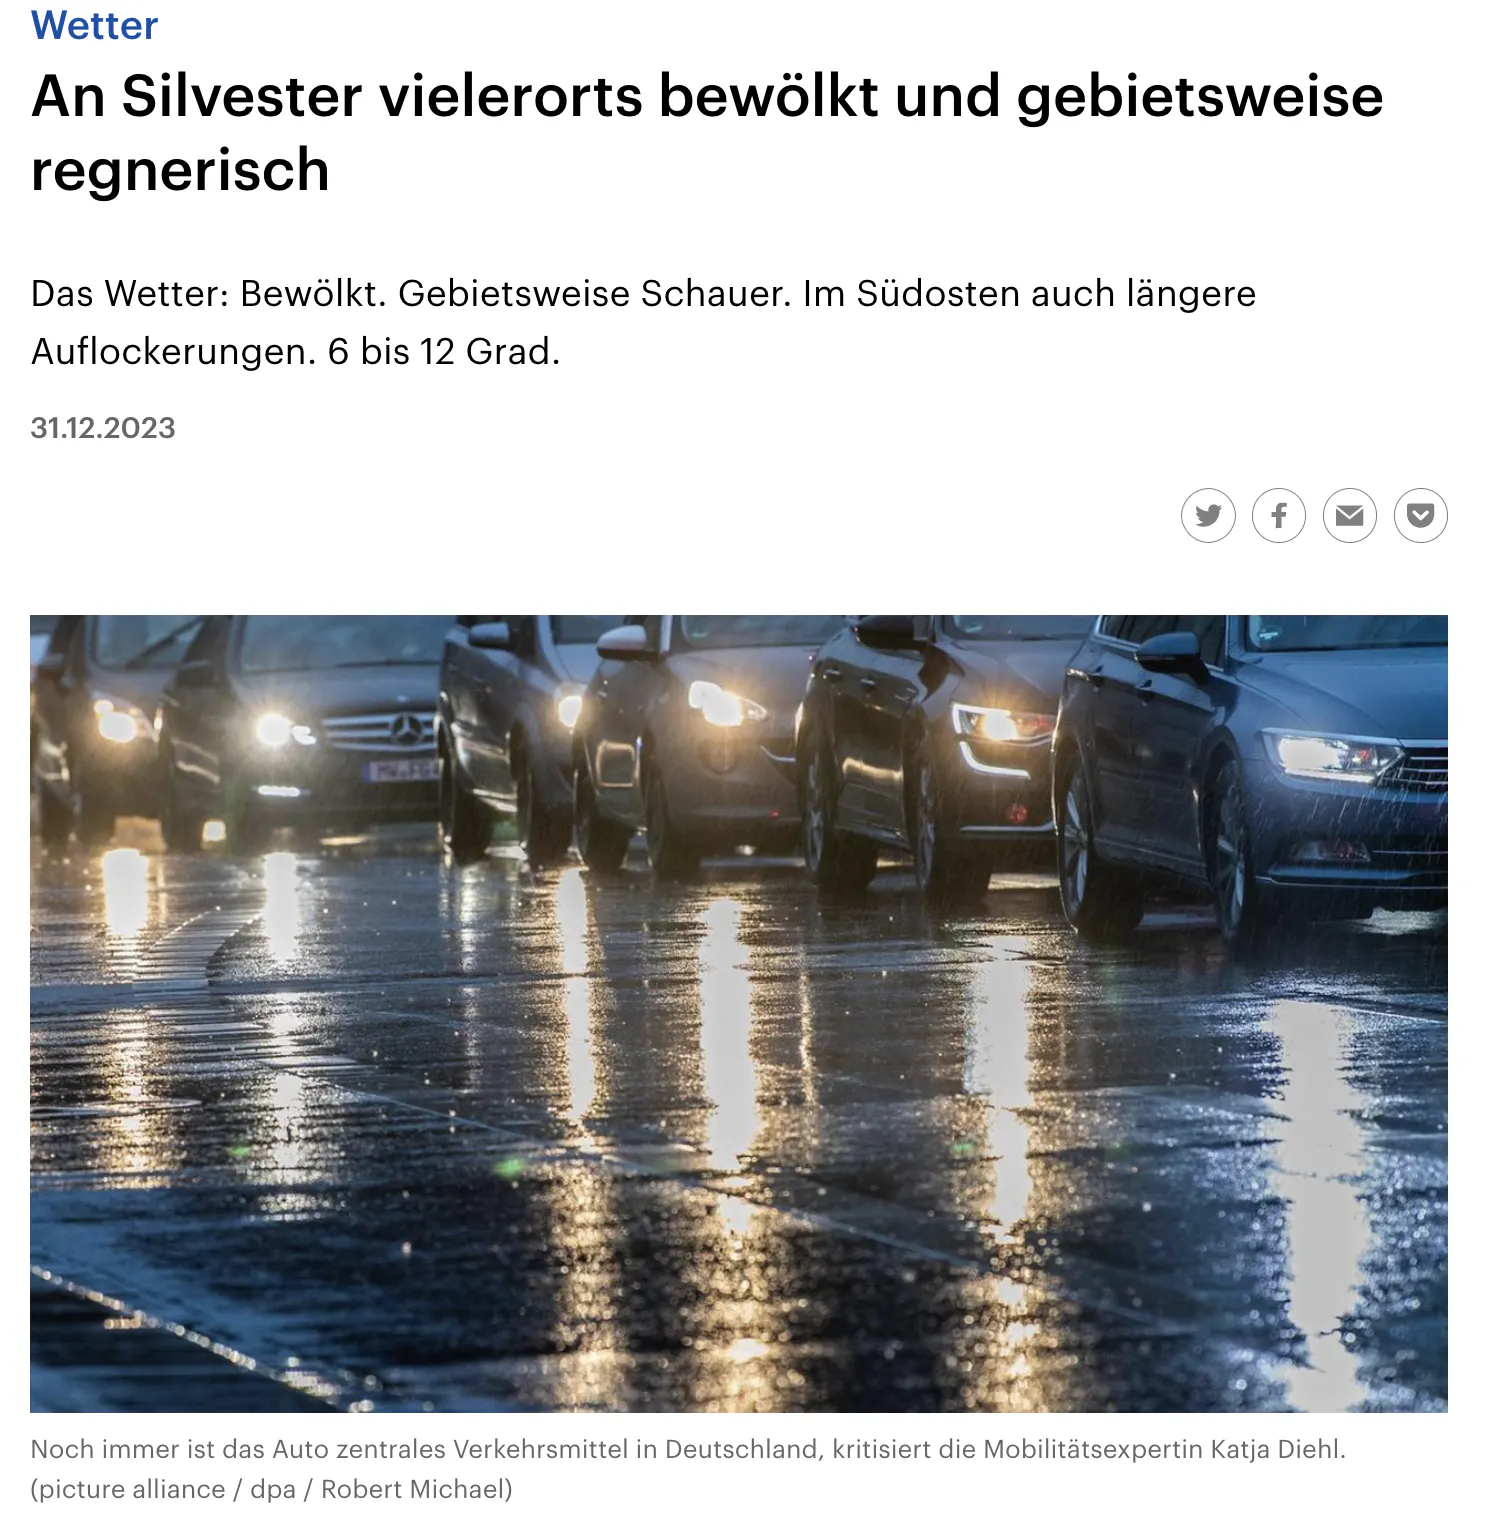 Überschrift des Artikels: An Silvester vielerorts bewölkt.
Man sieht ein Foto von einem Autostau, Bildunterschrift: Noch immer ist das Auto zentrales Verkehrsmittel in Deutschland, kritisiert die Mobilitätsexpertin Katja Diehl.